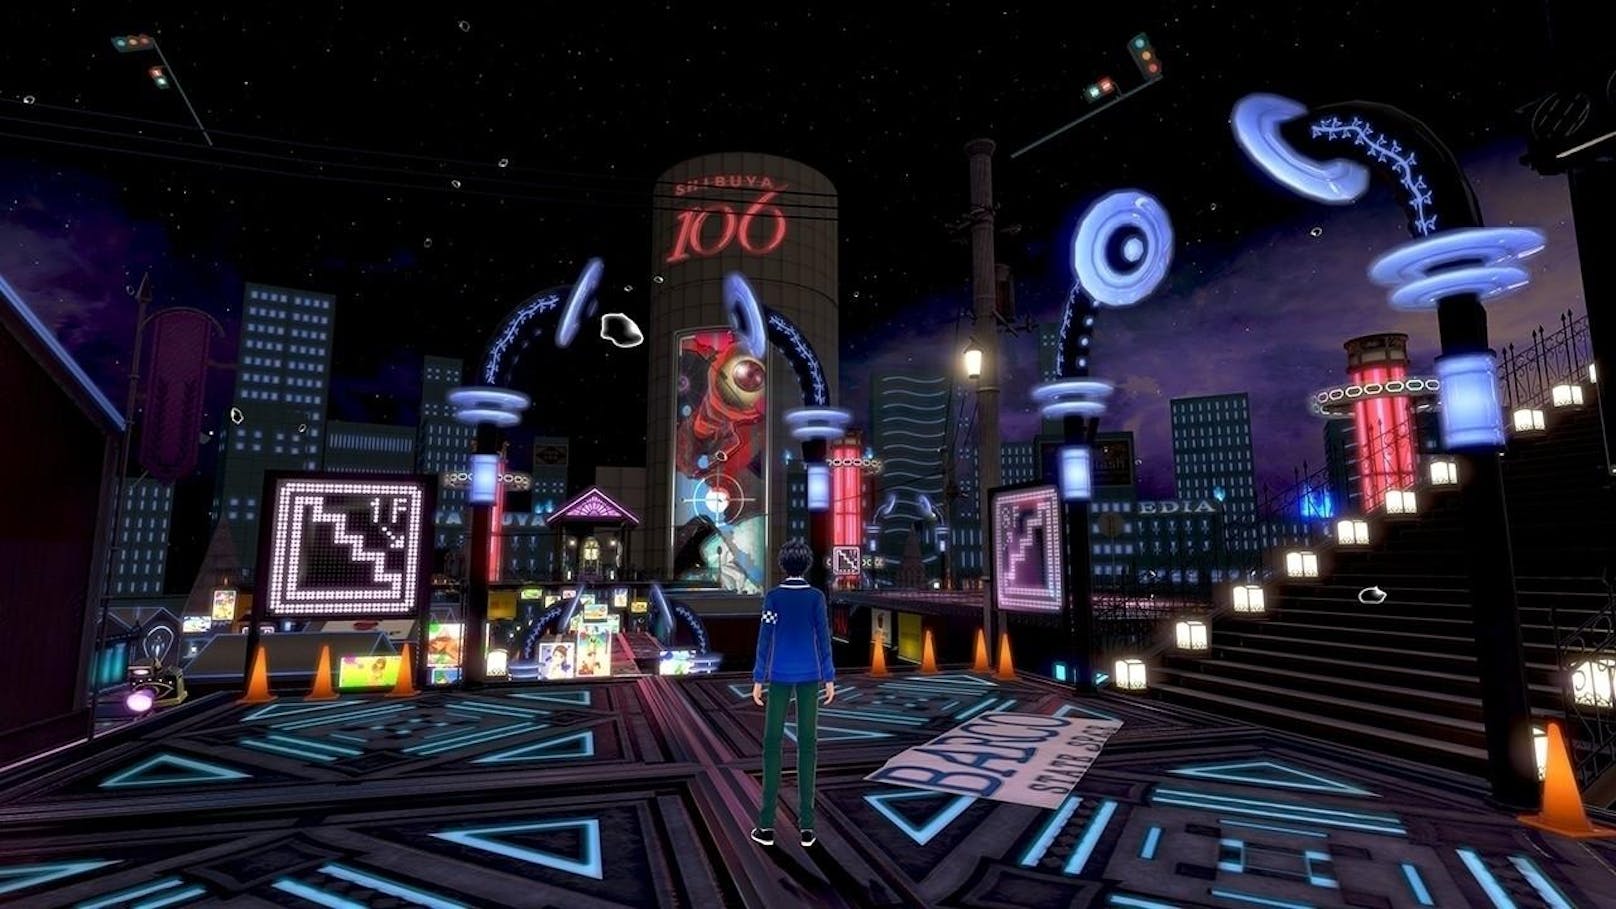 Der Spieler schlüpft in die Rolle des Schülers Itsuki, der seine Freundin Tsubasa zu einem Gesangswettbewerb begleitet, als sich plötzlich ein mysteriöses Portal öffnet.